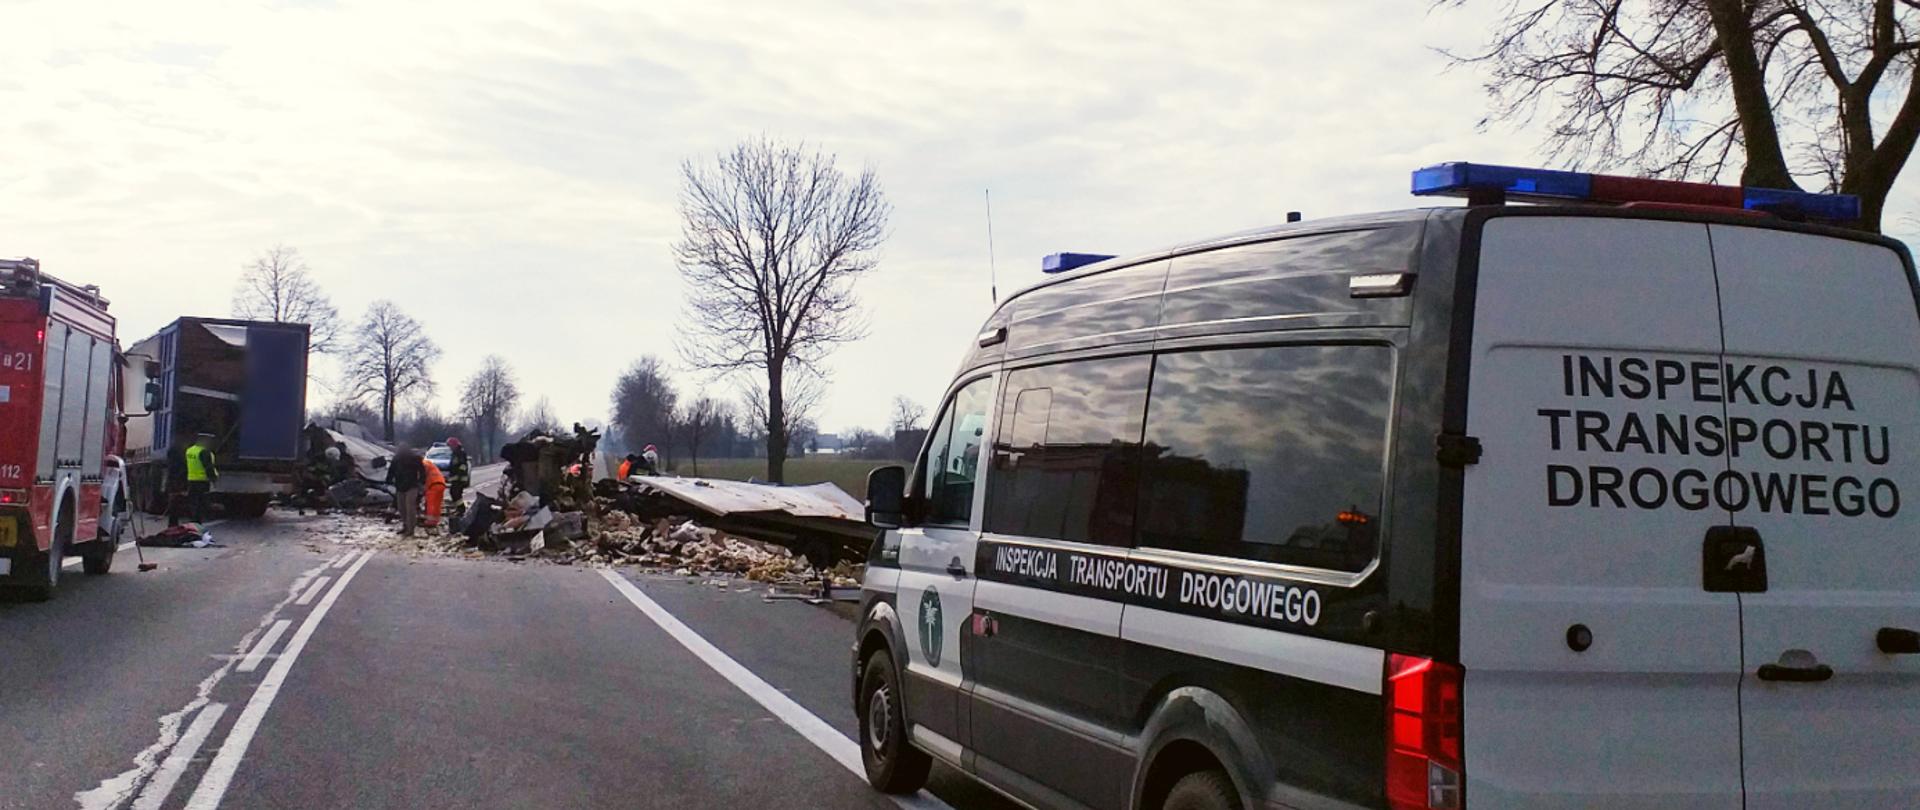 Inspektorzy świętokrzyskiej Inspekcji Transportu Drogowego na miejscu śmiertelnego wypadku. Na pierwszym planie furgon ITD. W oddali po lewej wóz strażacki, w centrum dwie roztrzaskane ciężarówki.